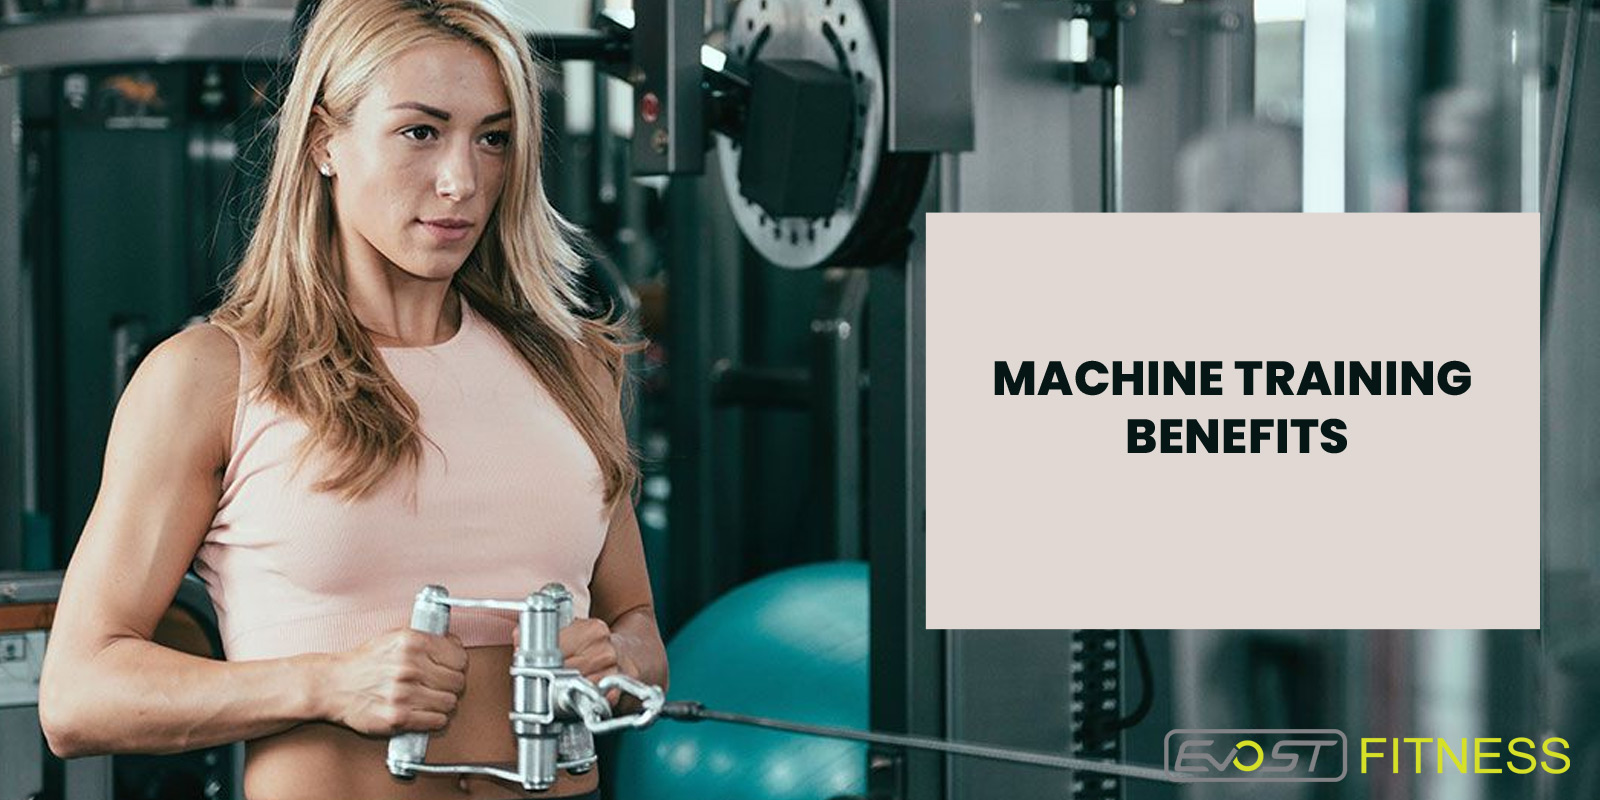 Machine training benefits